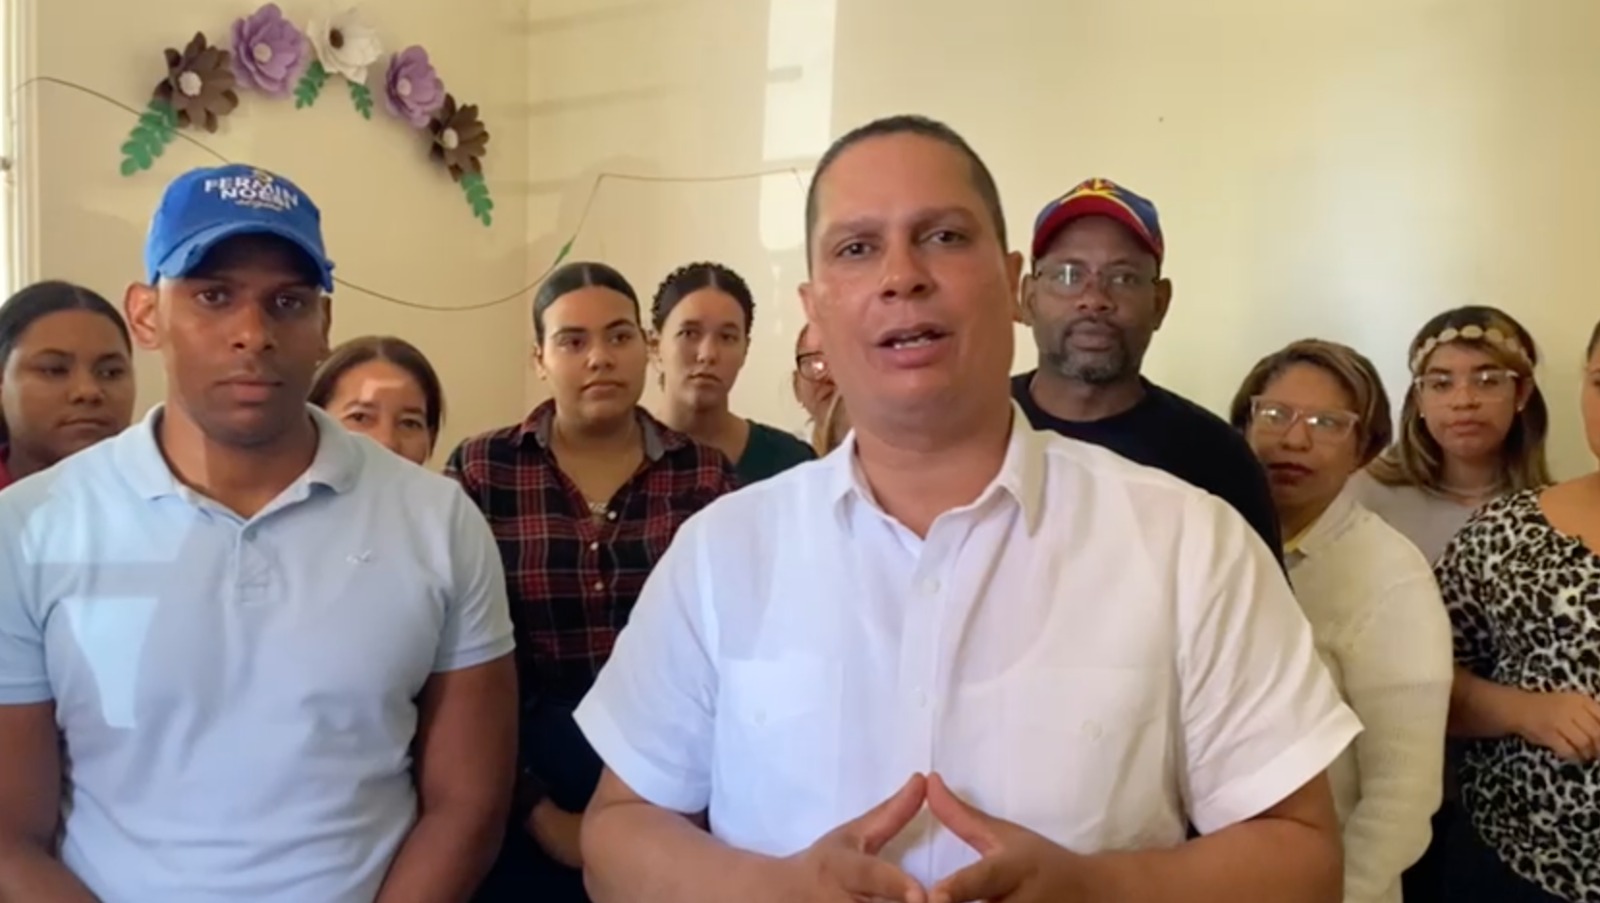 Justicia Social llega a 5 mil electores registrados en Hato del Yaque